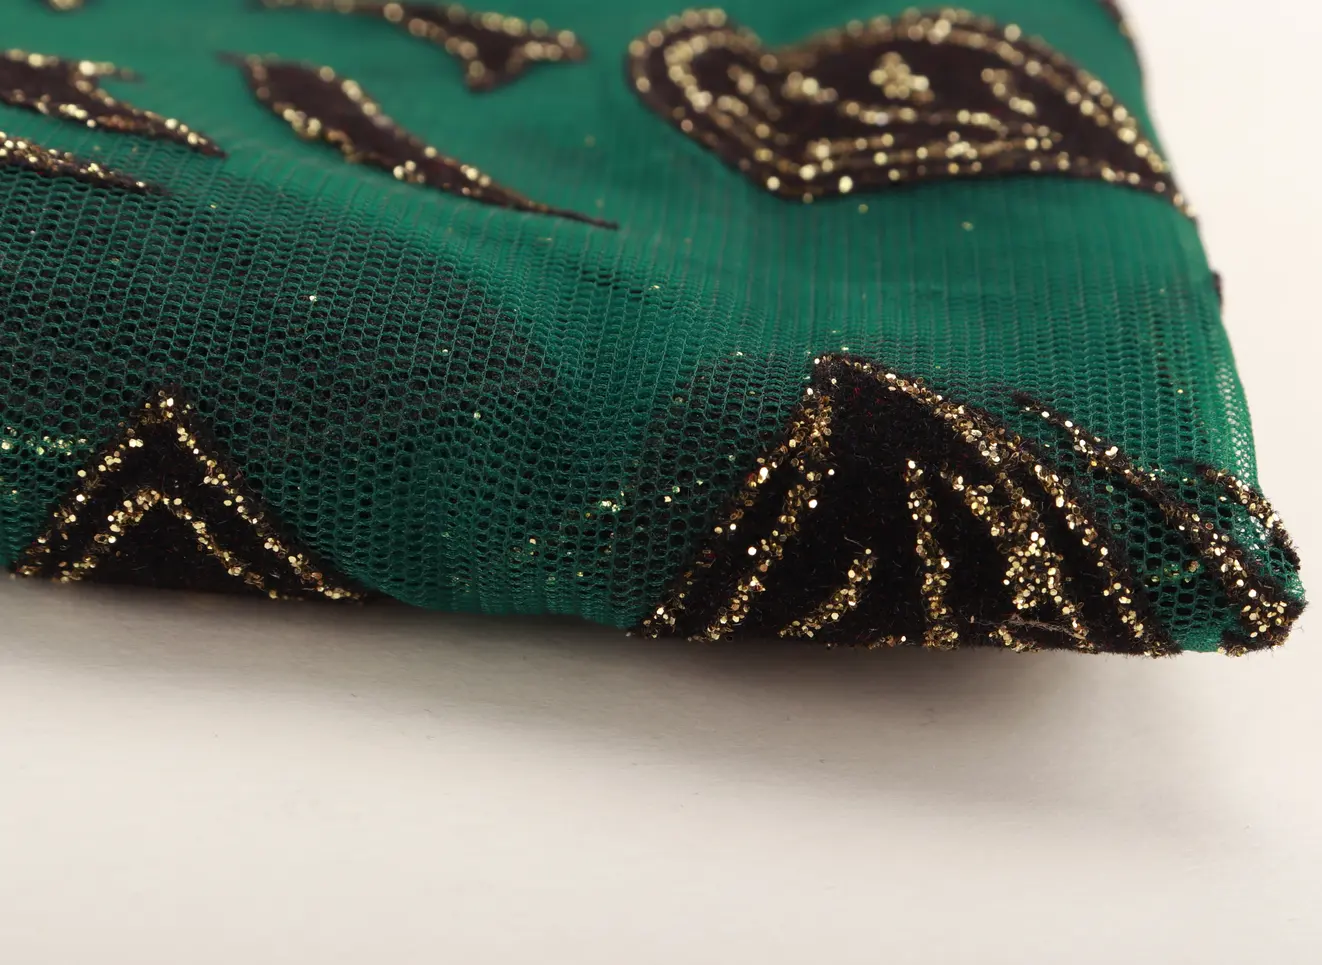 O mais recente projeto de ouro-de aro preto remendo folha verde impresso tule tecido 100% poliéster tecido do vestido de casamento banquete